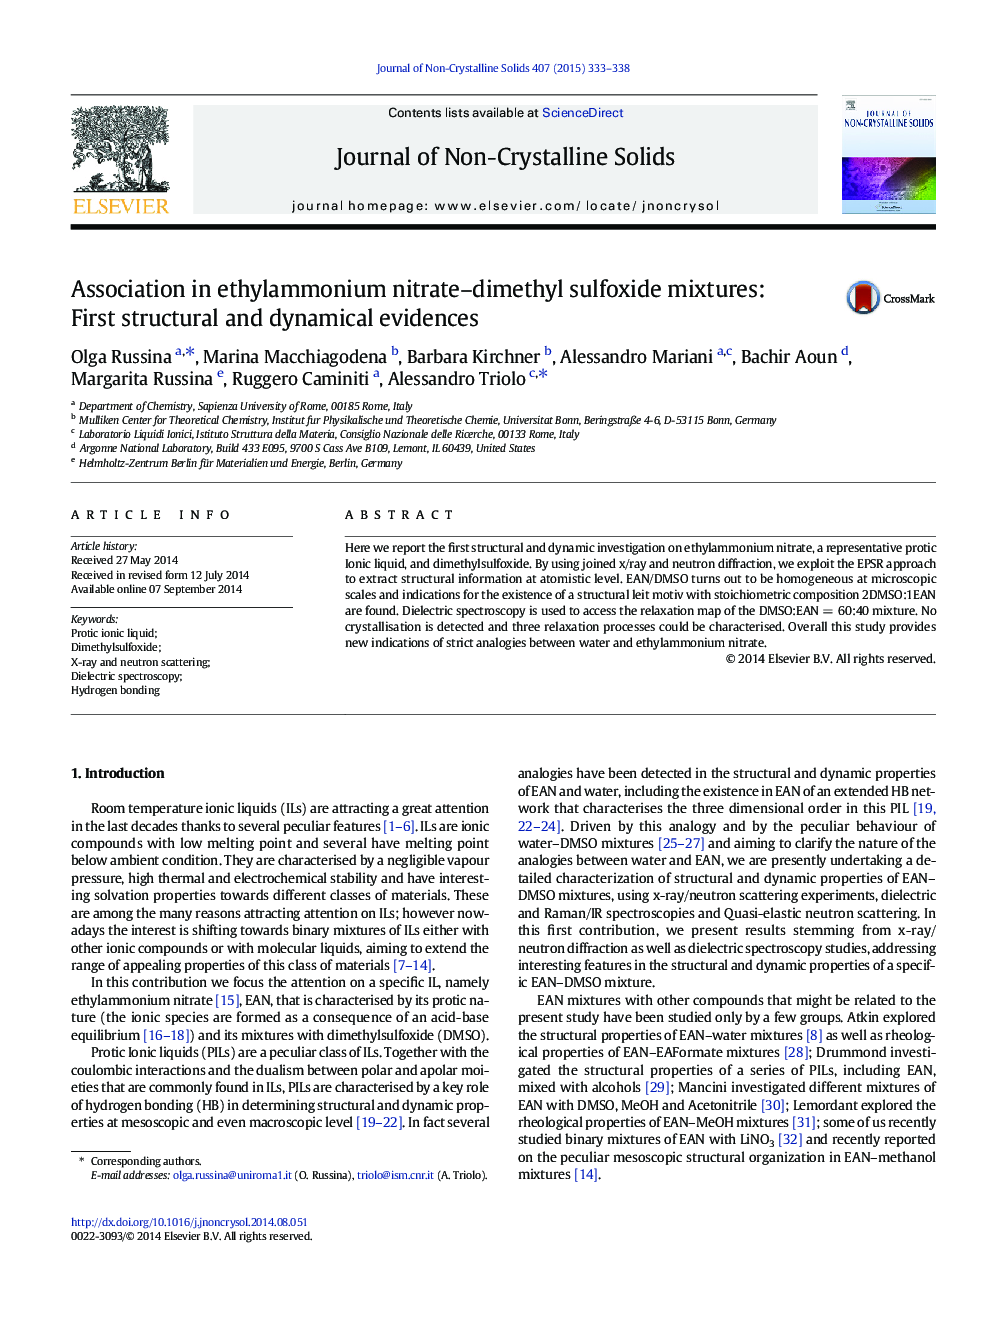 انجمن در مخلوط اتیل آمونیوم نیترات-دی متیل سولفوکسید: اولین شواهد ساختاری و دینامیکی 